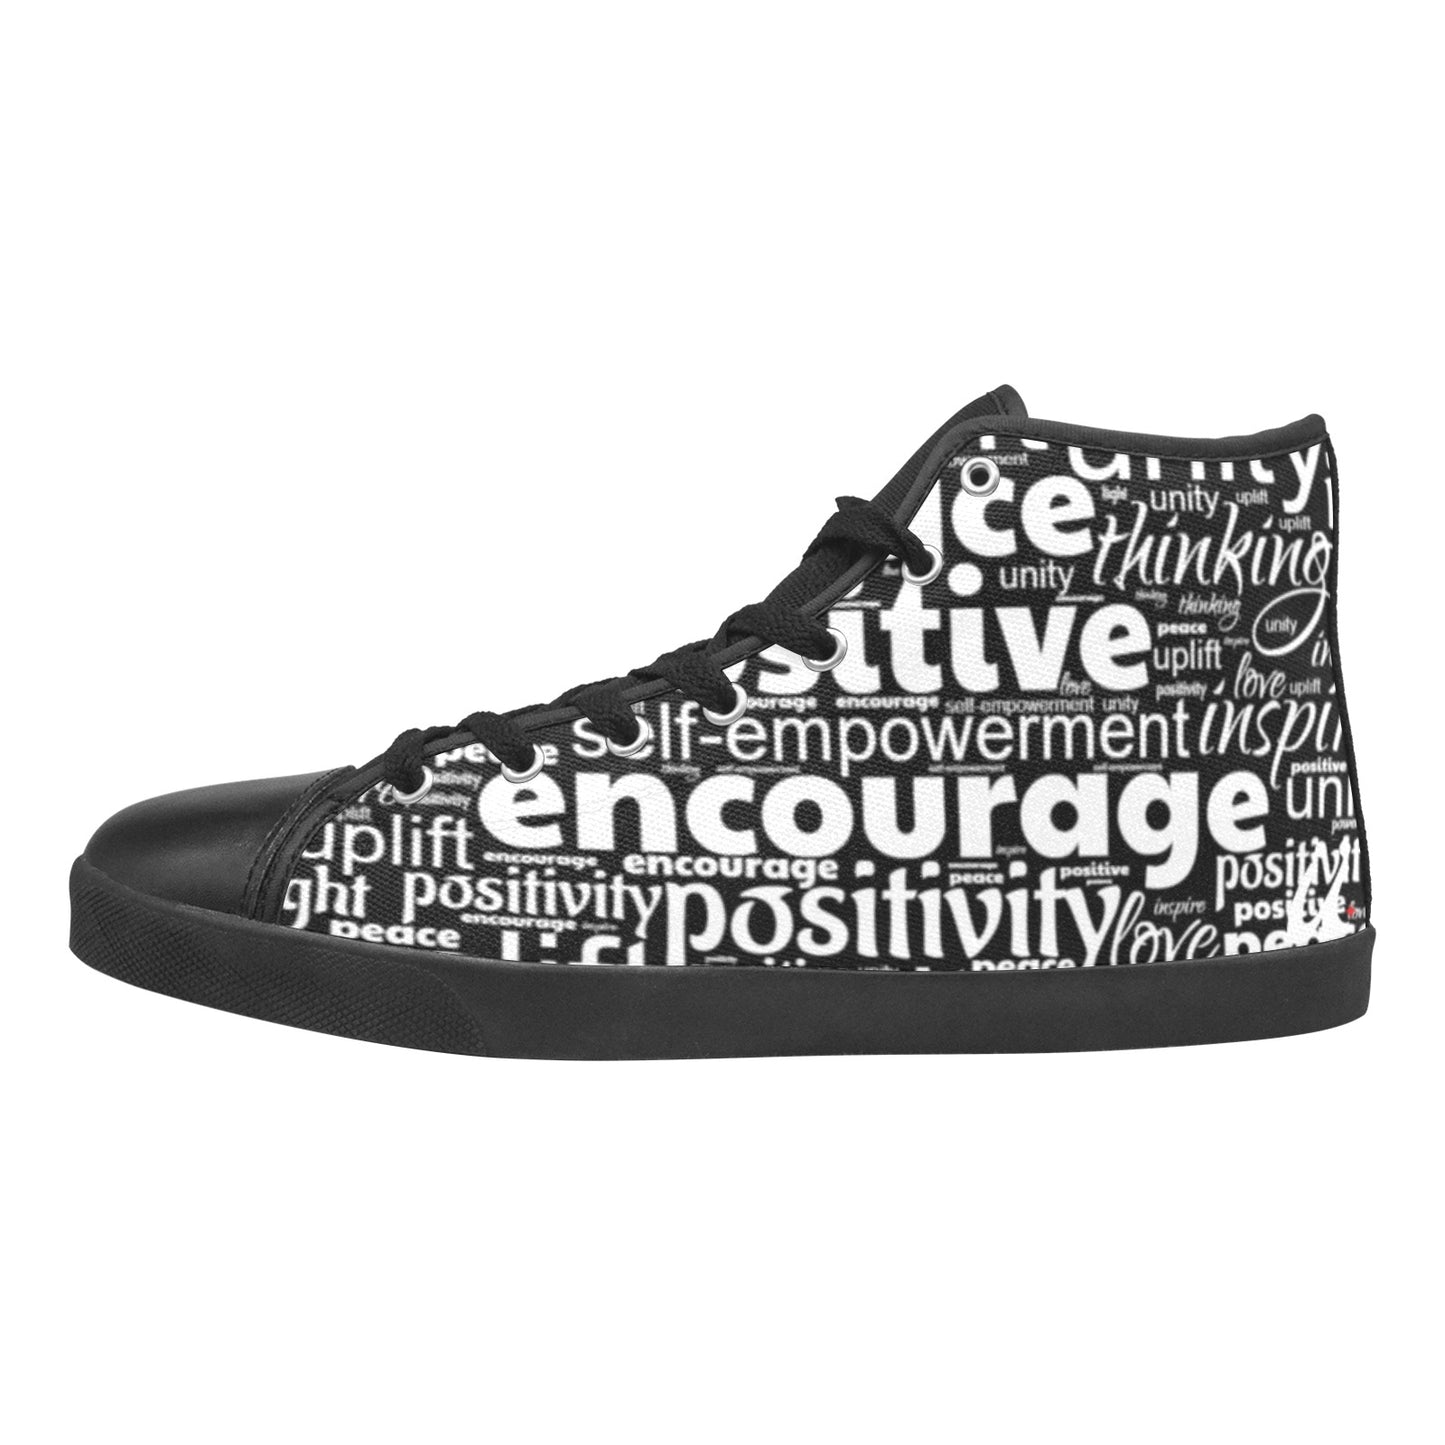 Positively u - Black High Top Canvas Men's Shoes